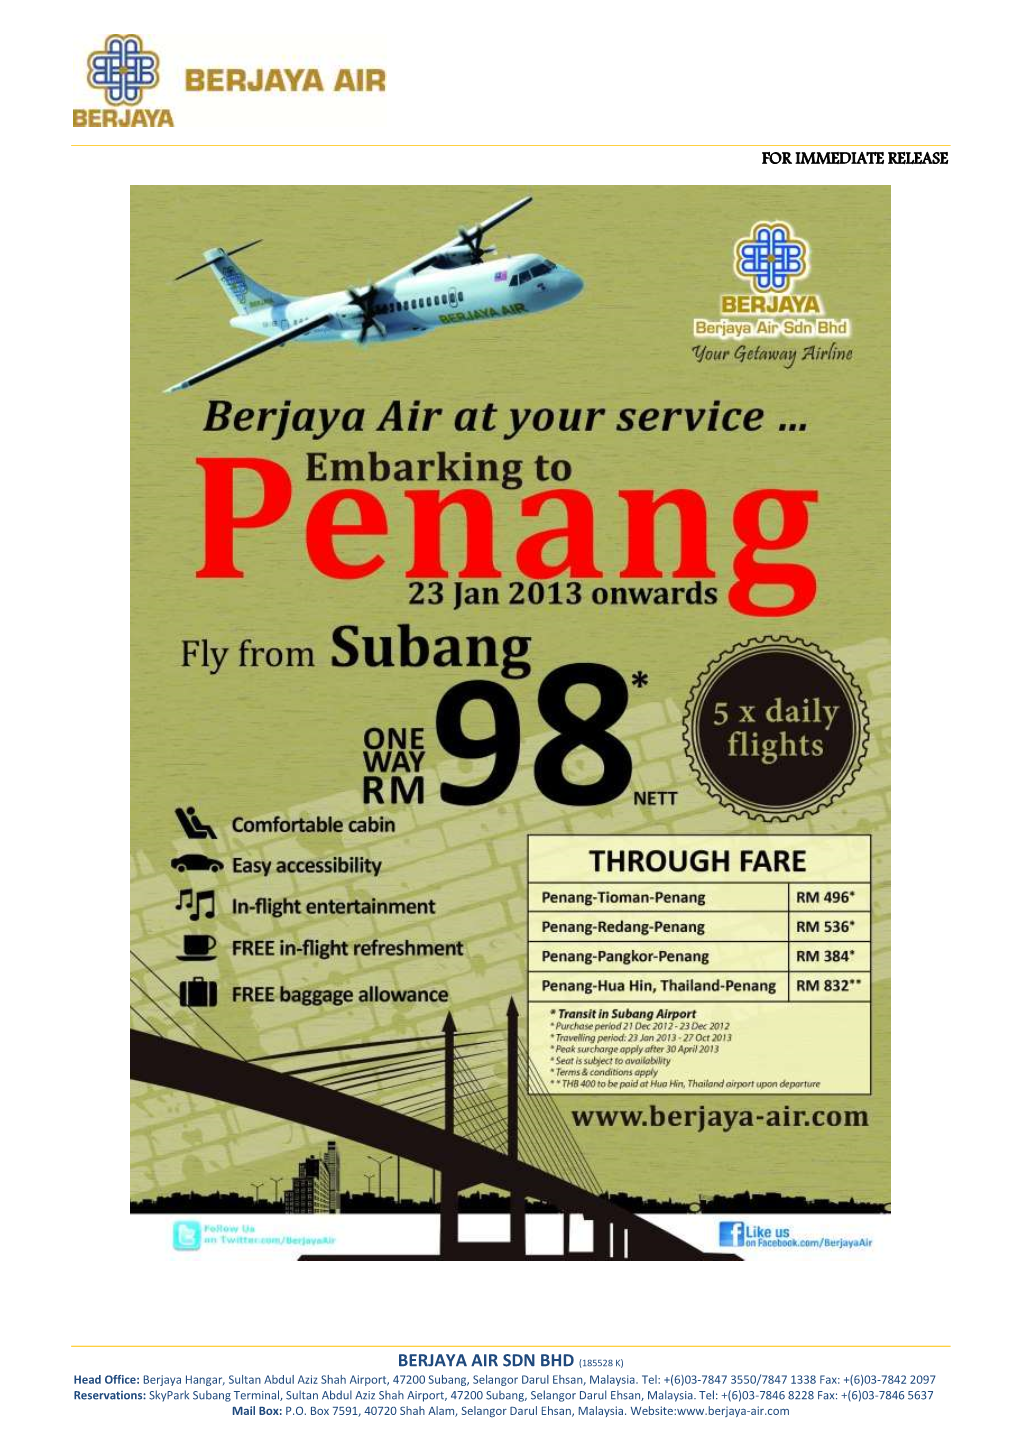 BERJAYA AIR SDN BHD (185528 K) Head Office: Berjaya Hangar, Sultan Abdul Aziz Shah Airport, 47200 Subang, Selangor Darul Ehsan, Malaysia